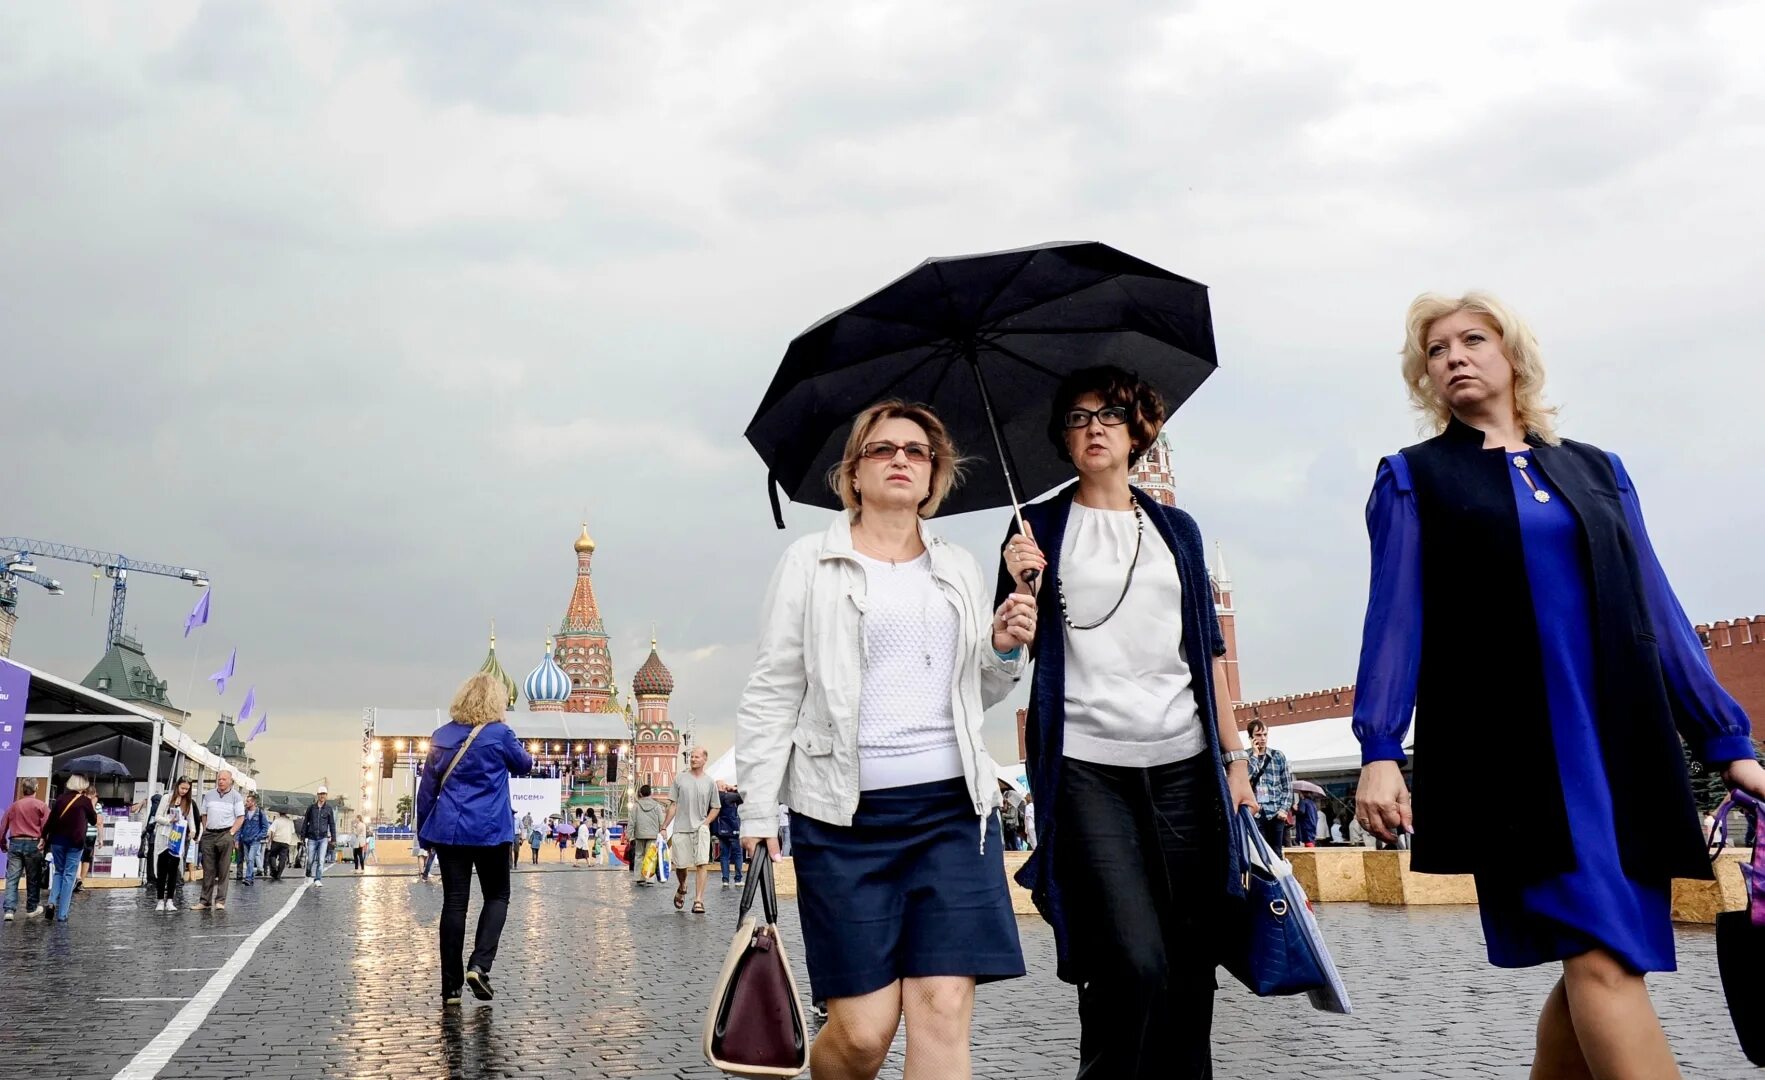 В чем сейчас ходят люди. В чем ходят в Москве сейчас по погоде женщины. В чем сейчас ходят в Москве. В чем ходят люди в Москве летом. Как одеваются в Москве сейчас по погоде фото.